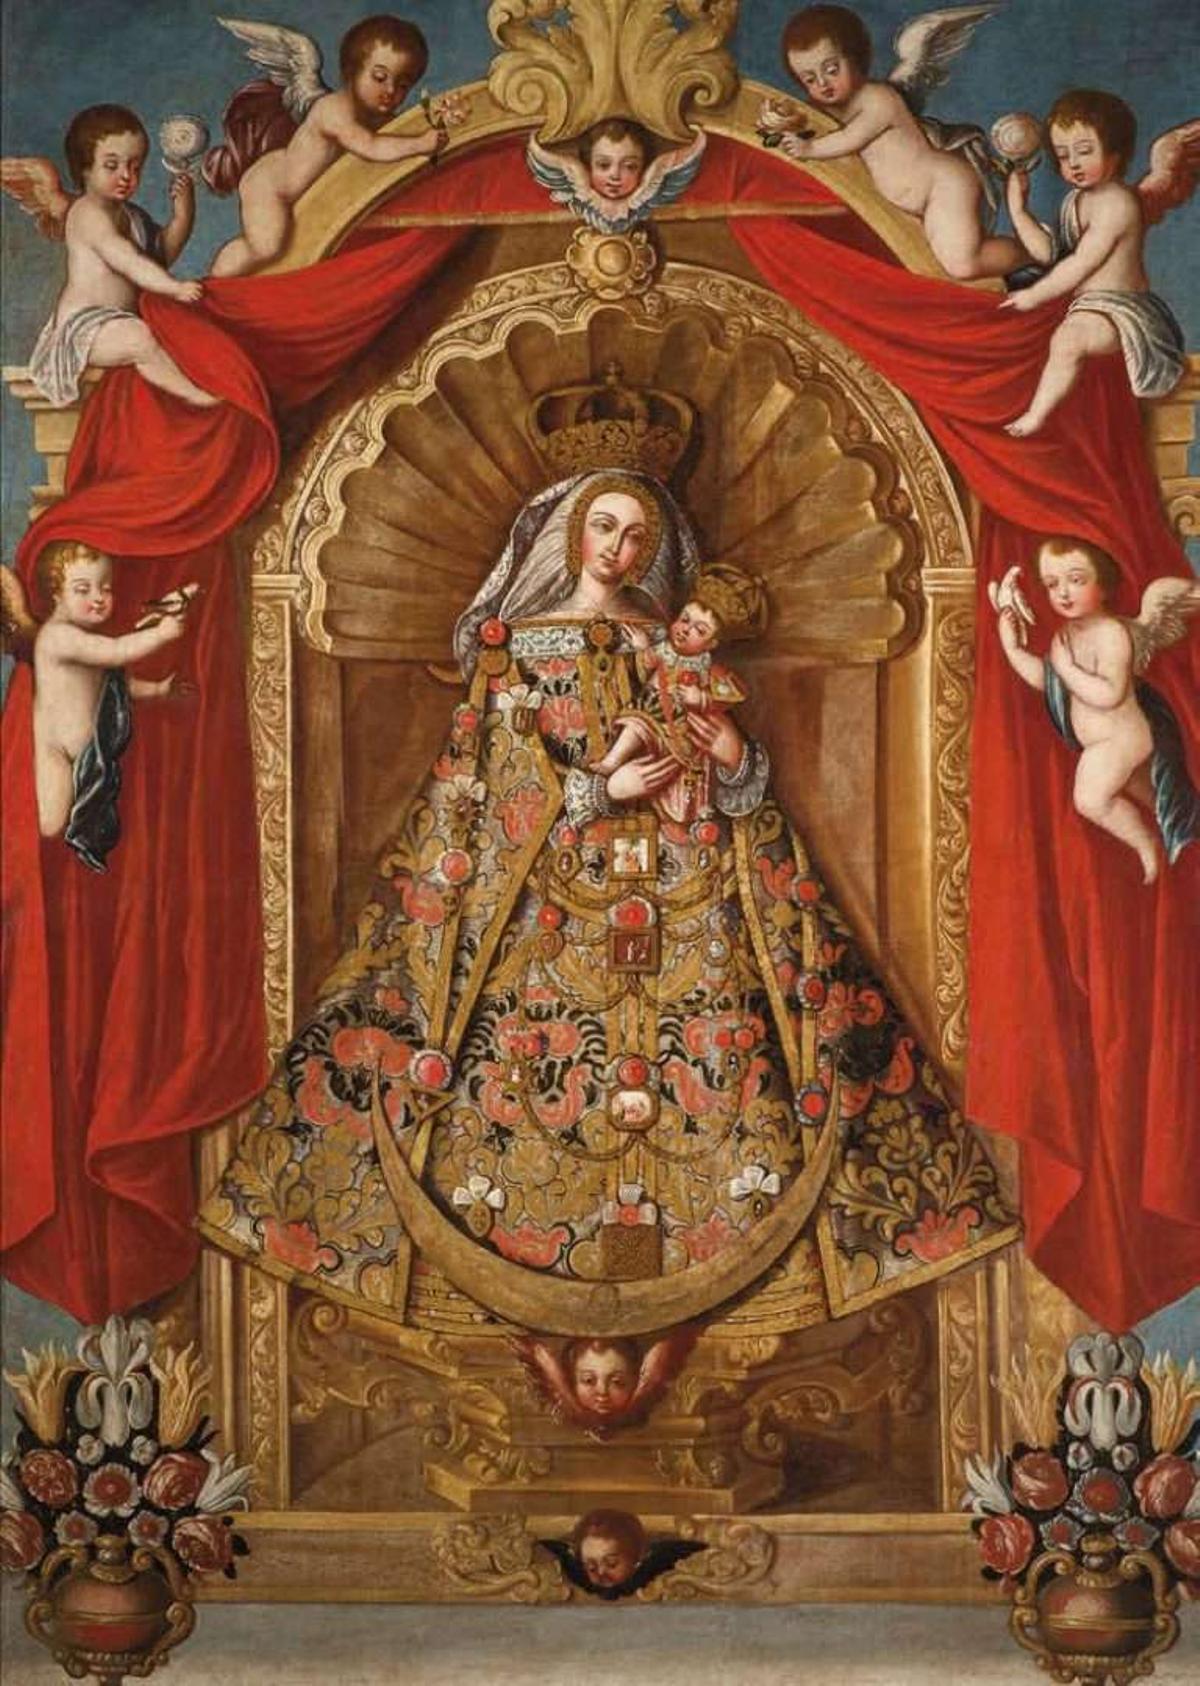 Cuadro de la Virgen del Pino creado por Francisco de Paula.